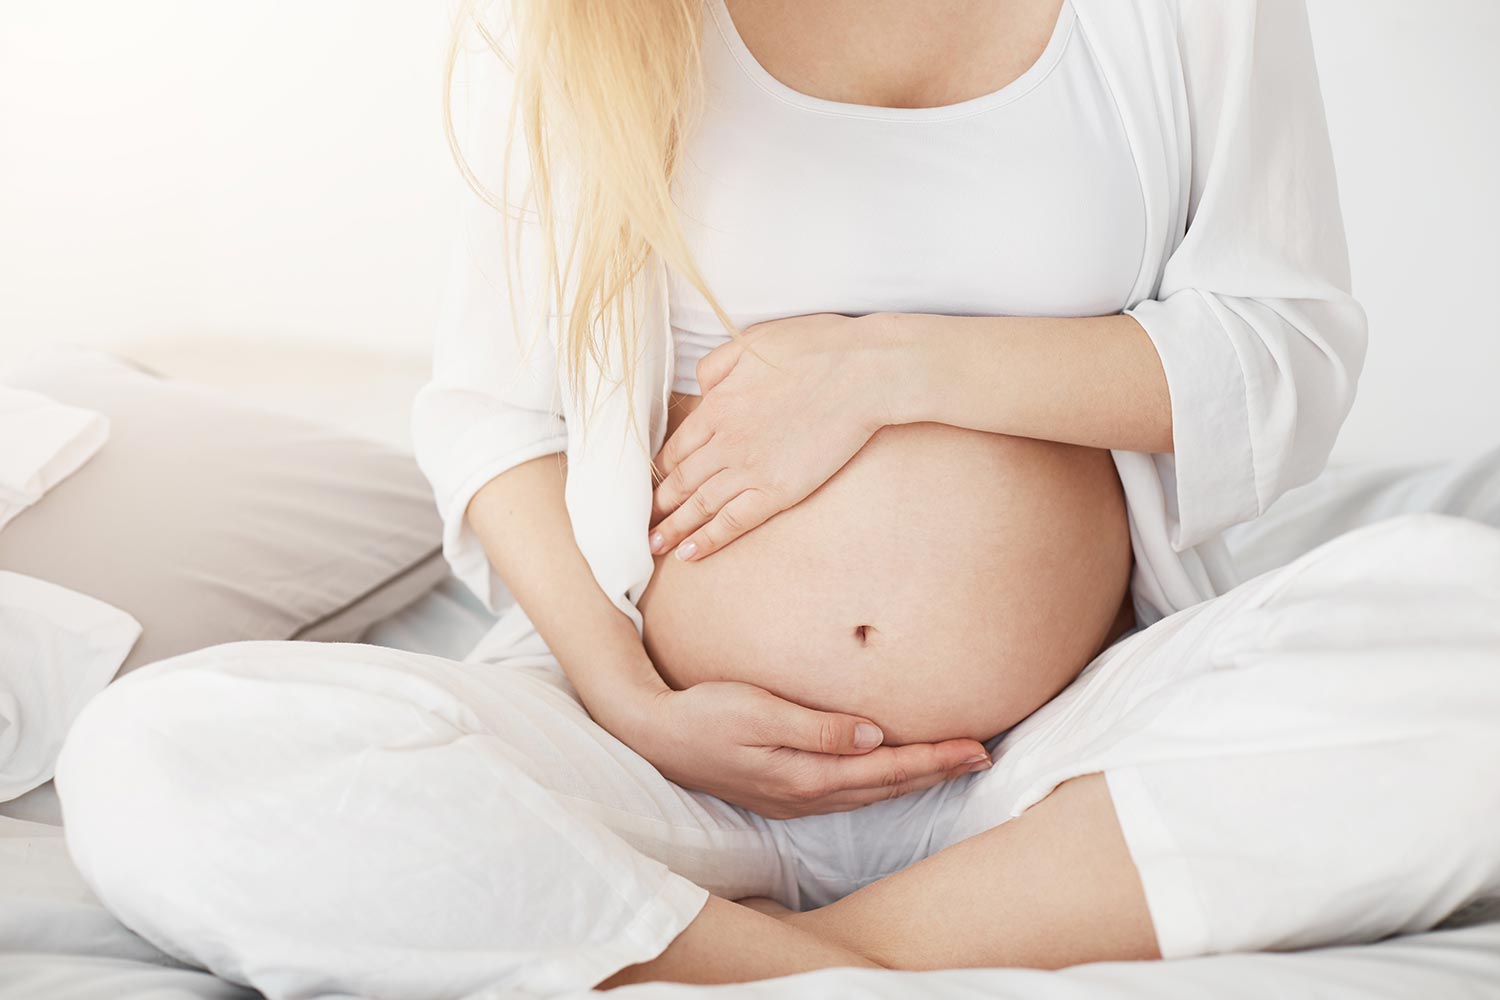 Femmes enceintes – Ce qu’il faut savoir sur le vaccin contre la rubéole et pourquoi vous devriez le recevoir